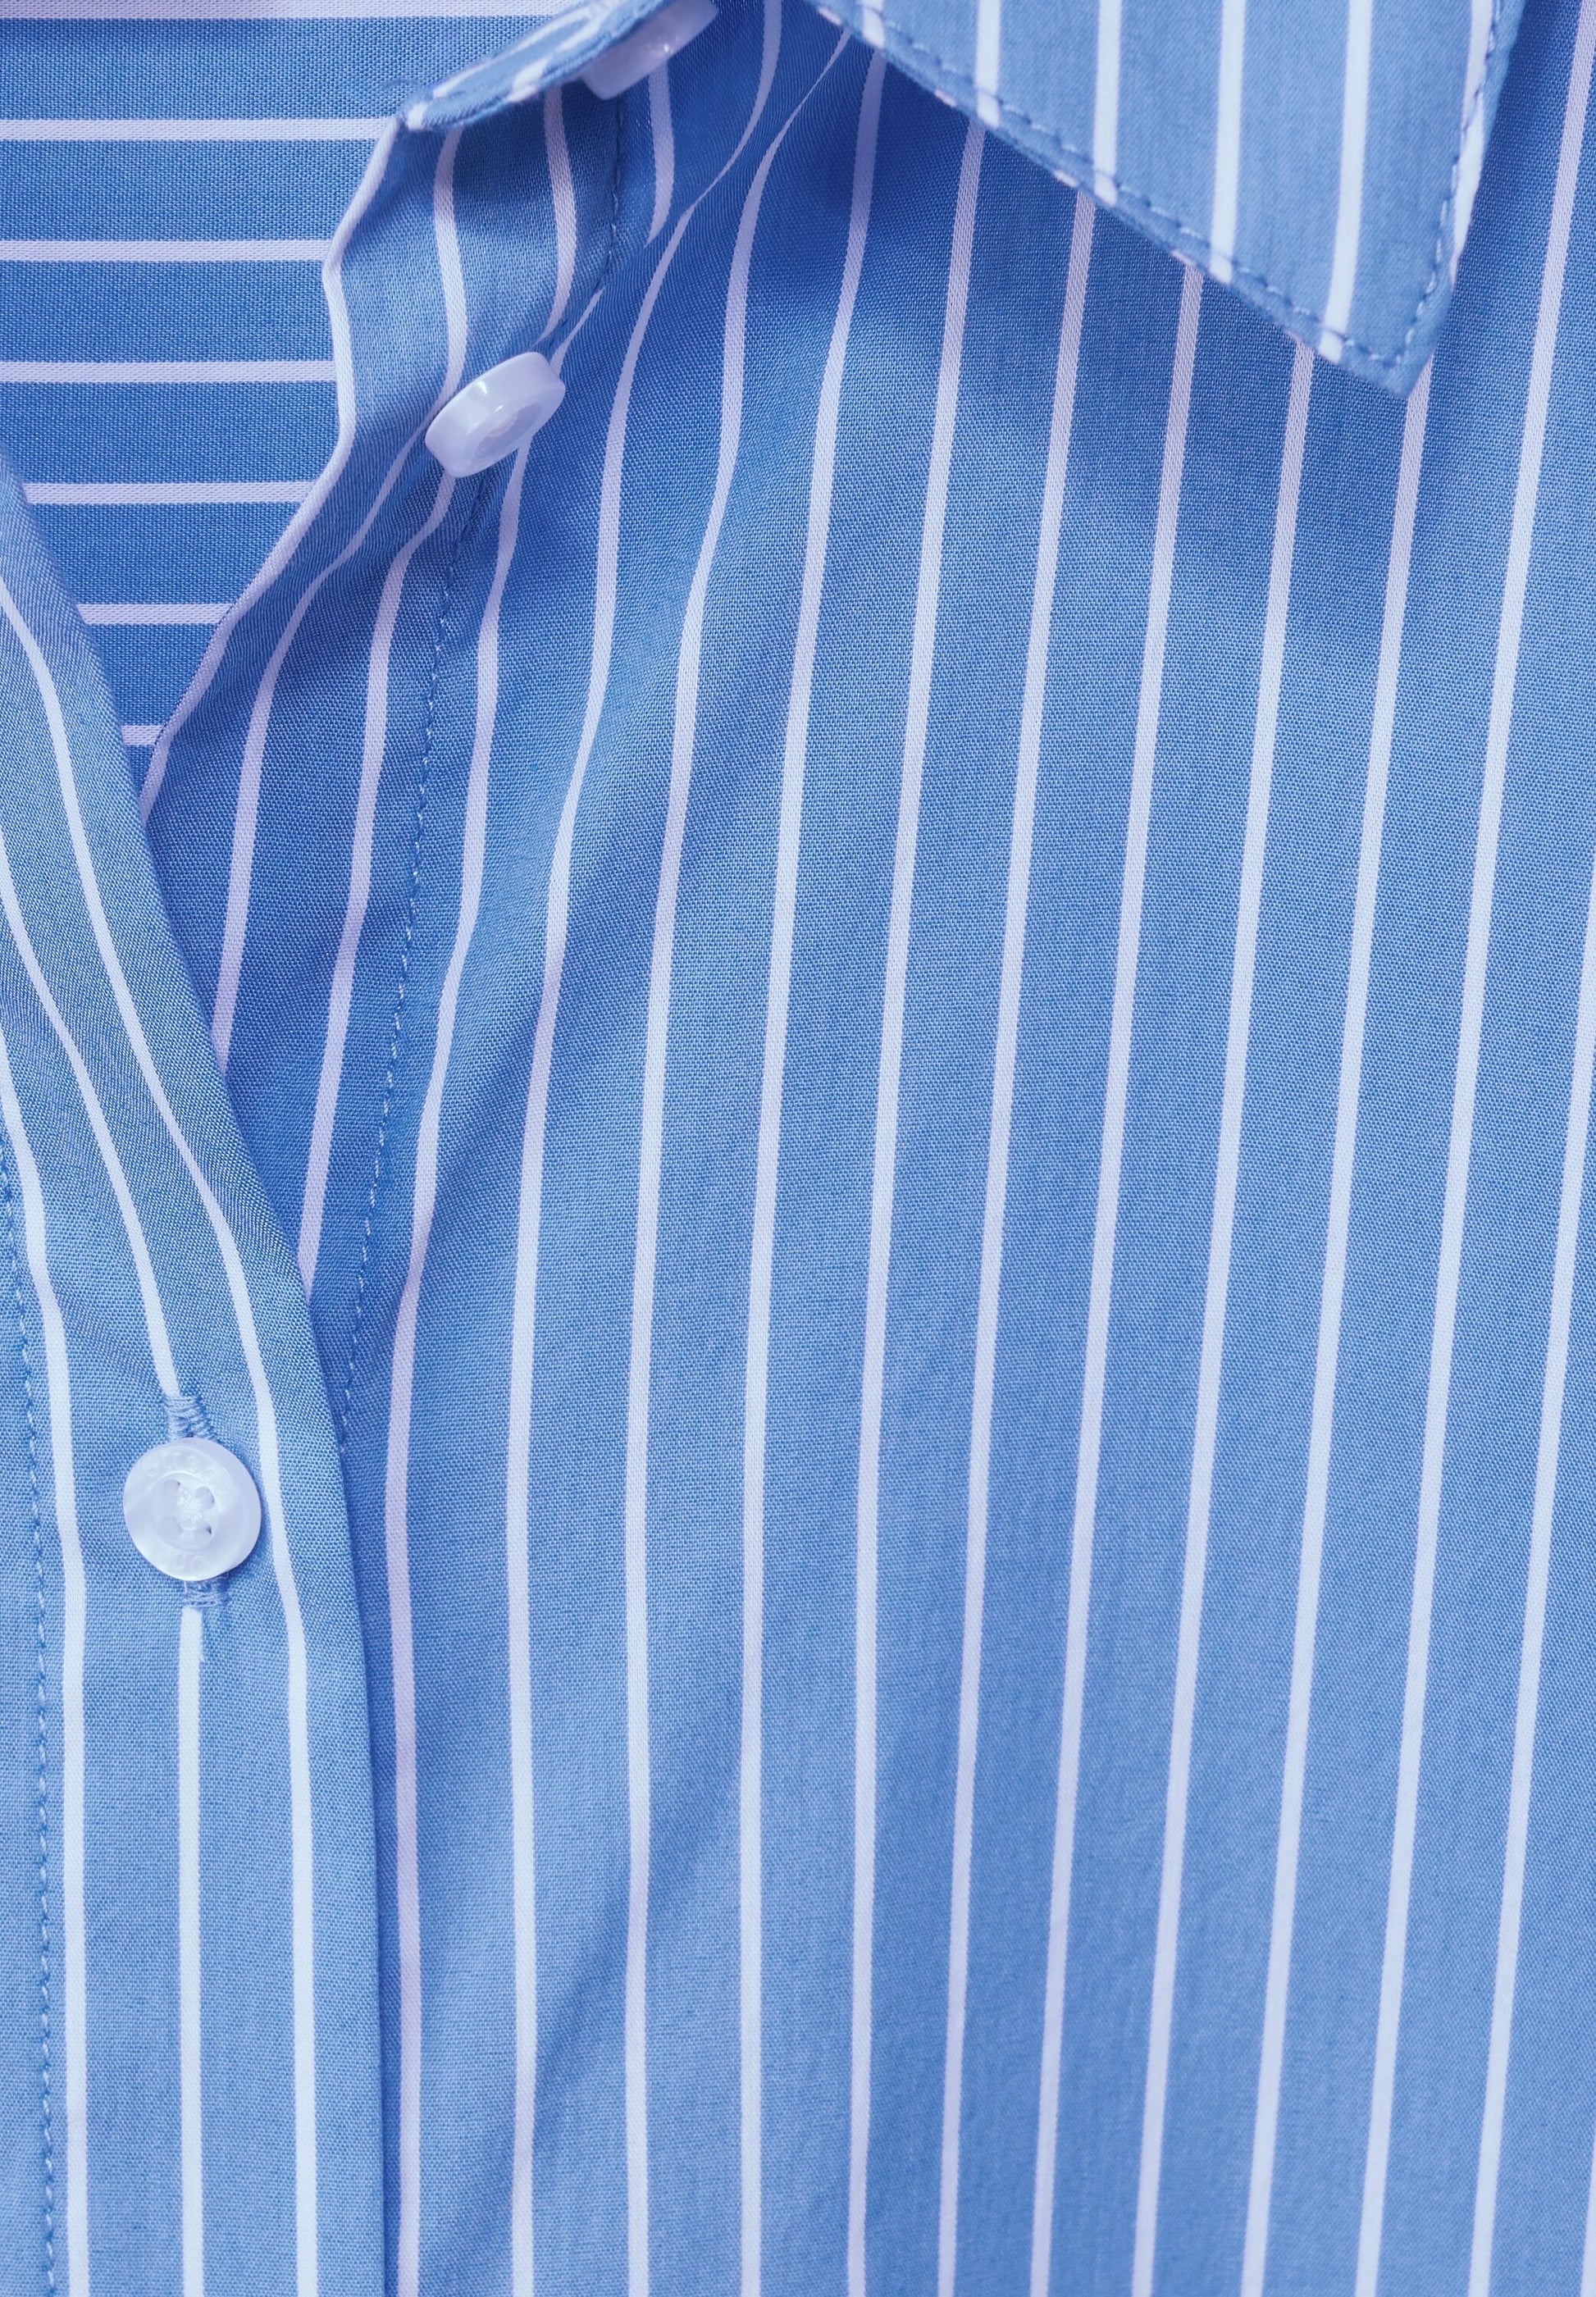 Ein Detailfoto von einer Bluse mit Streifen und Knöpfen